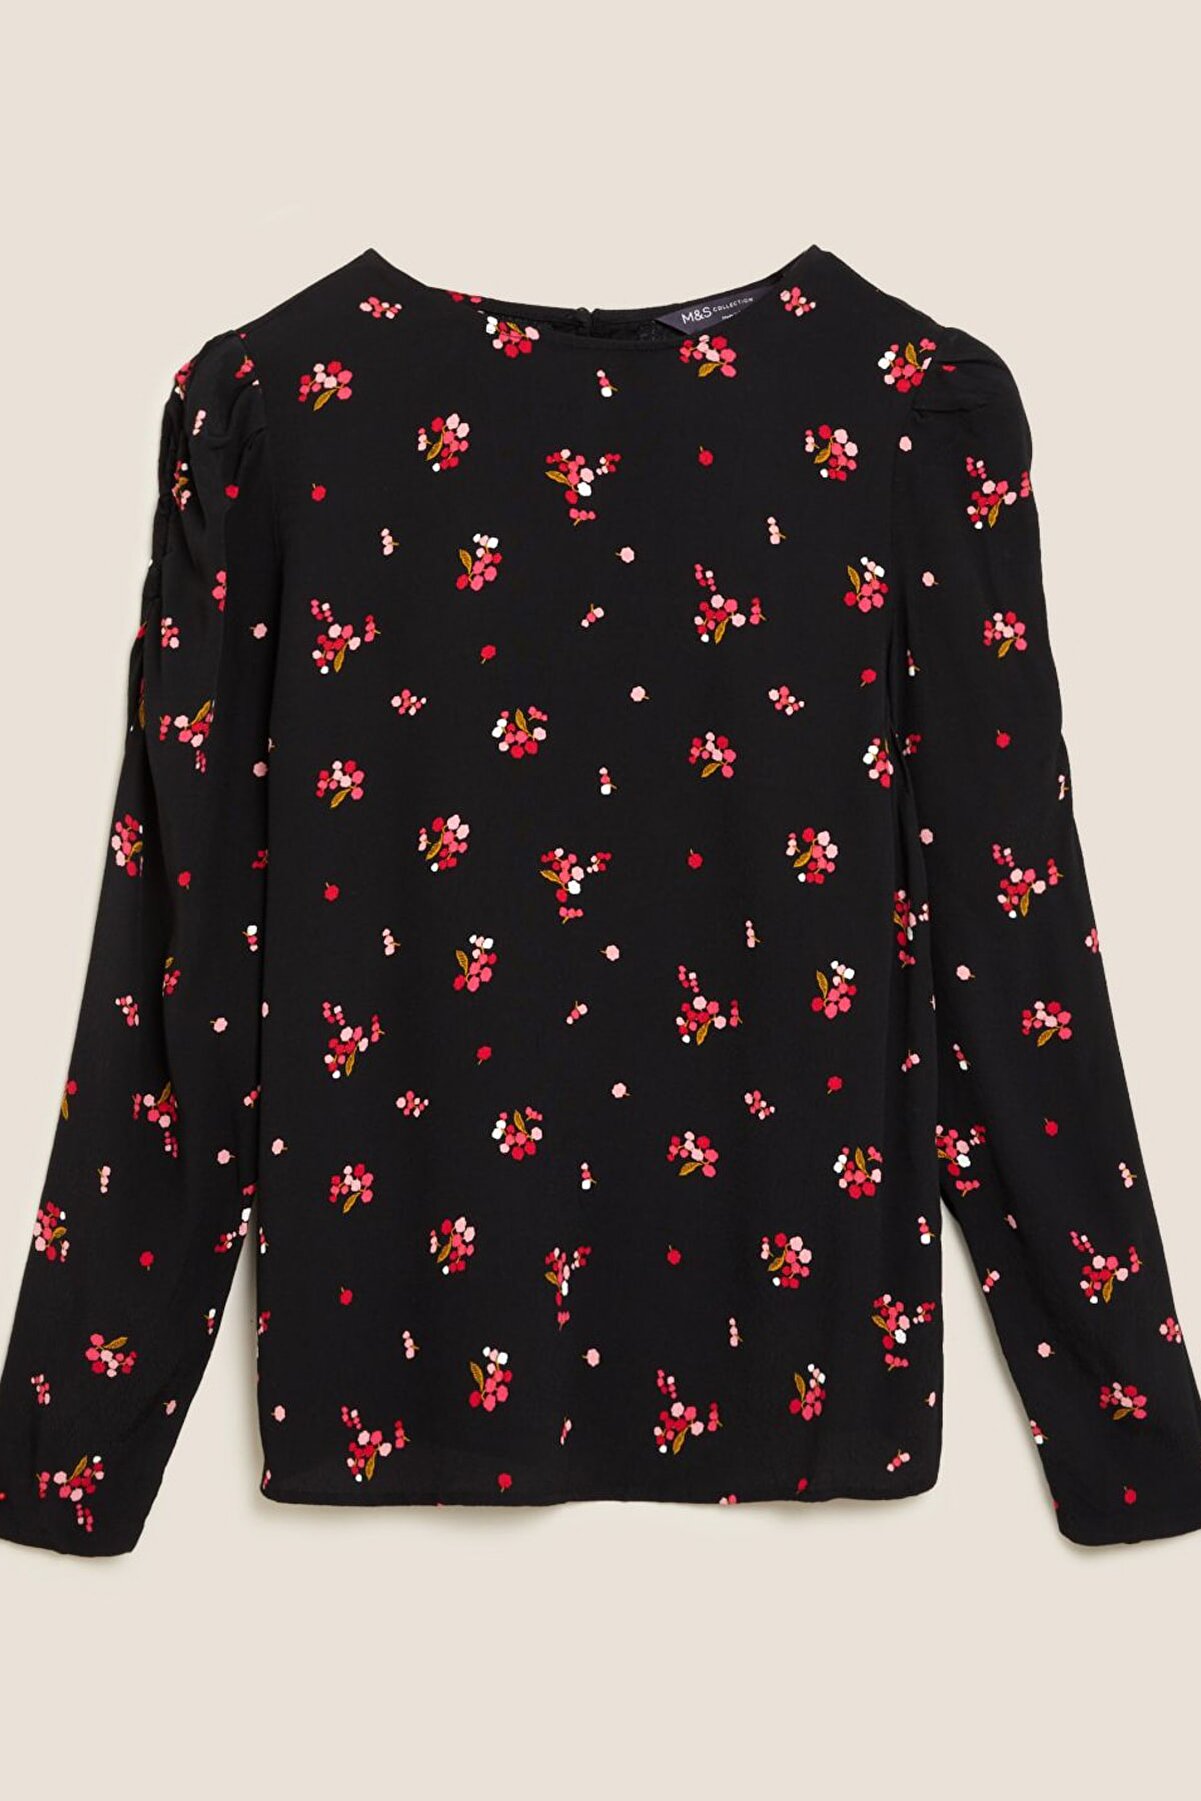 Marks & Spencer Kadın Siyah Çiçek Desenli Kolları Büzgülü Bluz T43002898